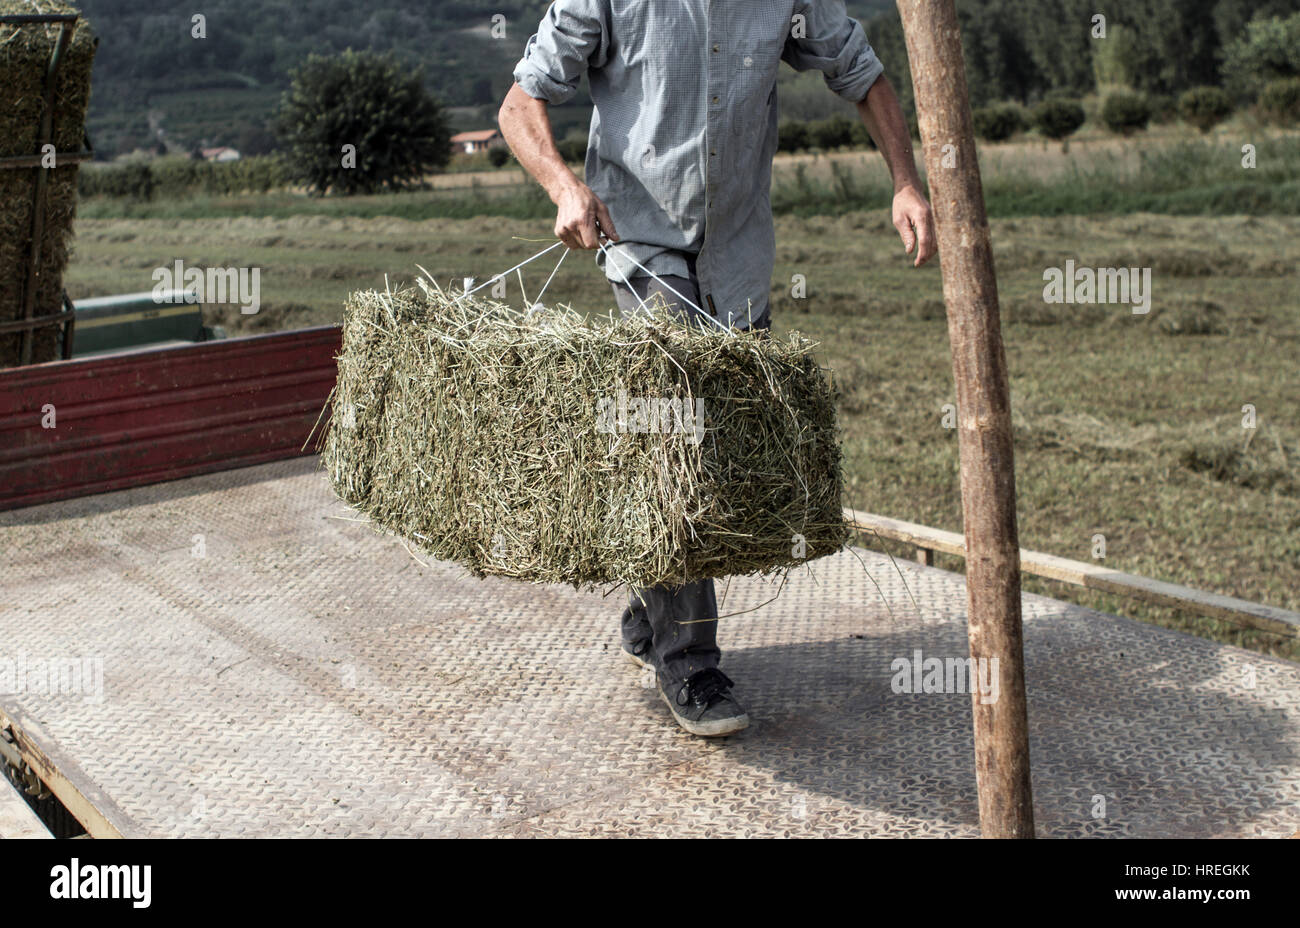 La récolte de foin dans l'homme Magliano Alfieri, qui est situé dans la province du Piémont, en Italie. Banque D'Images